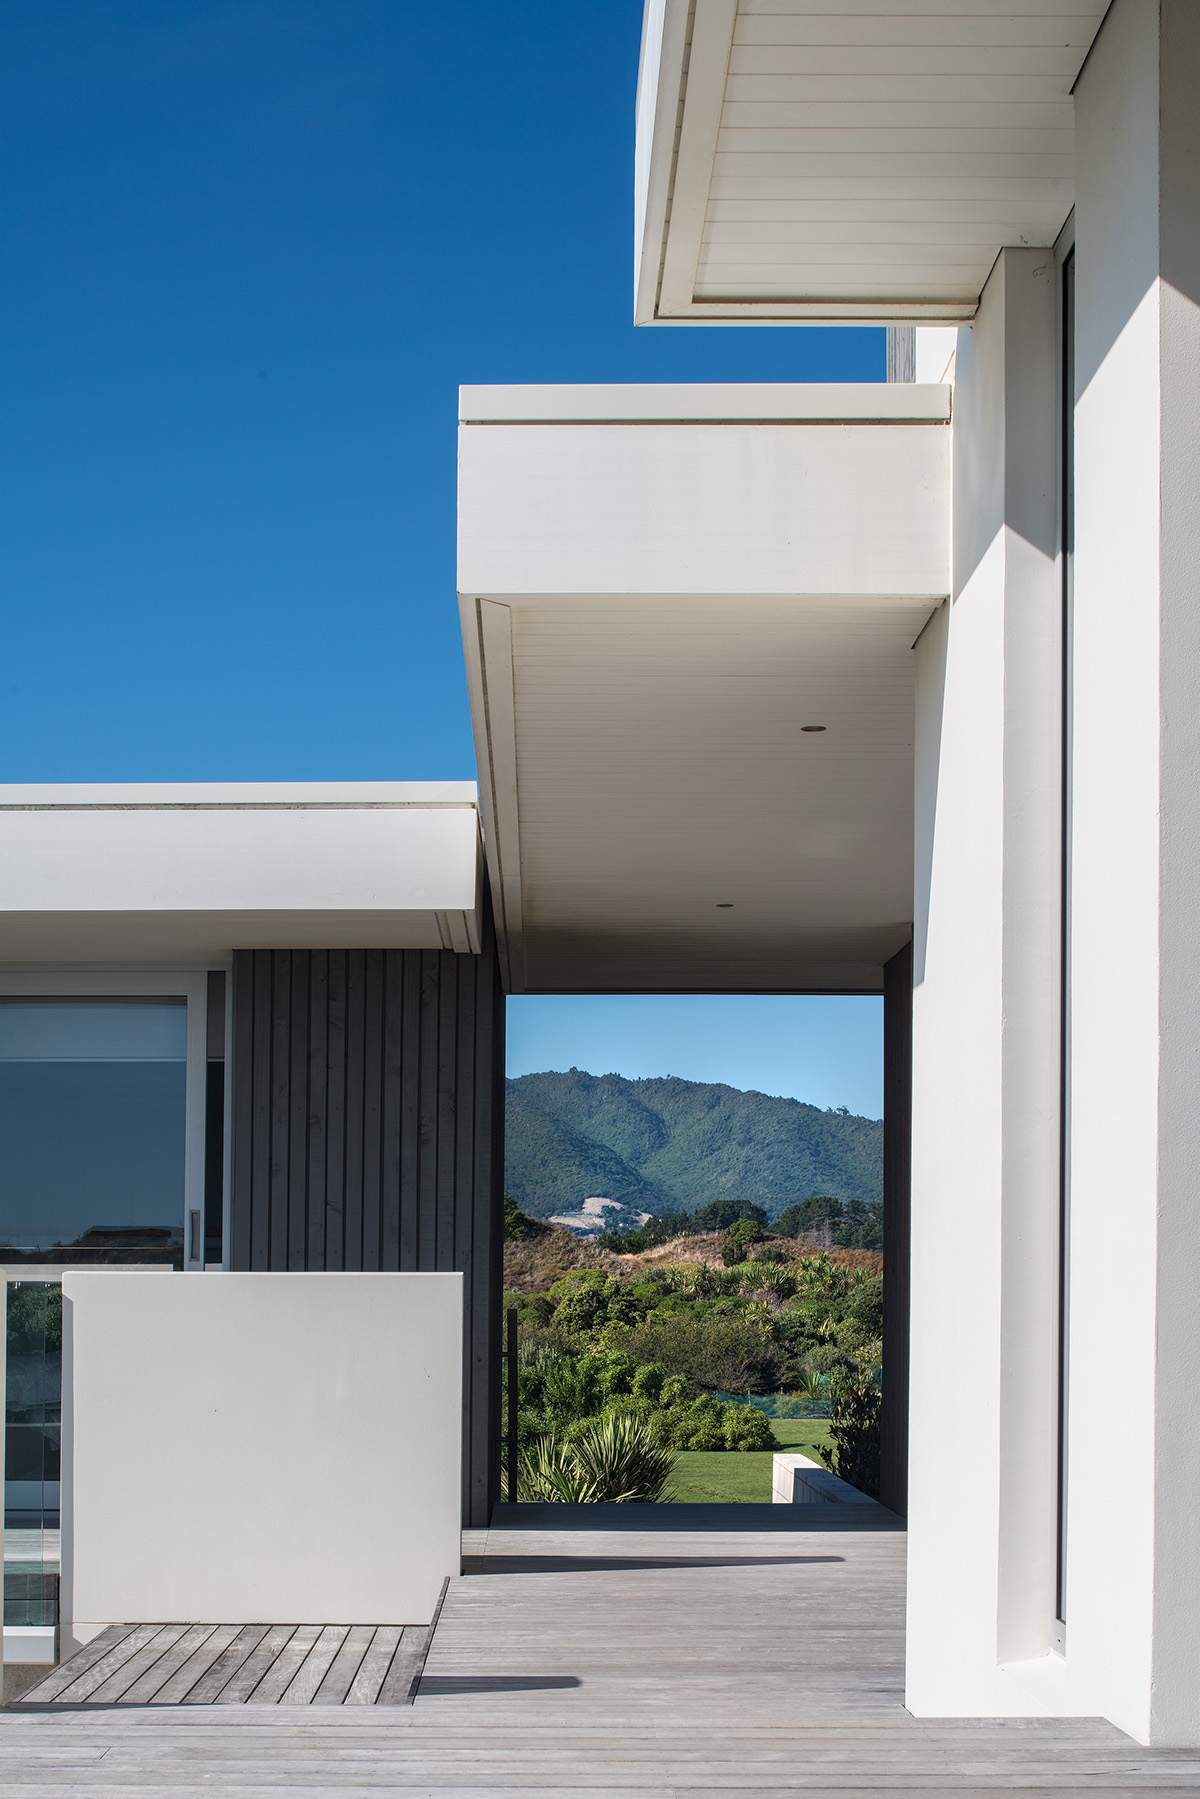 design wellington New Zealand photographers bach house beach Coast residential prime